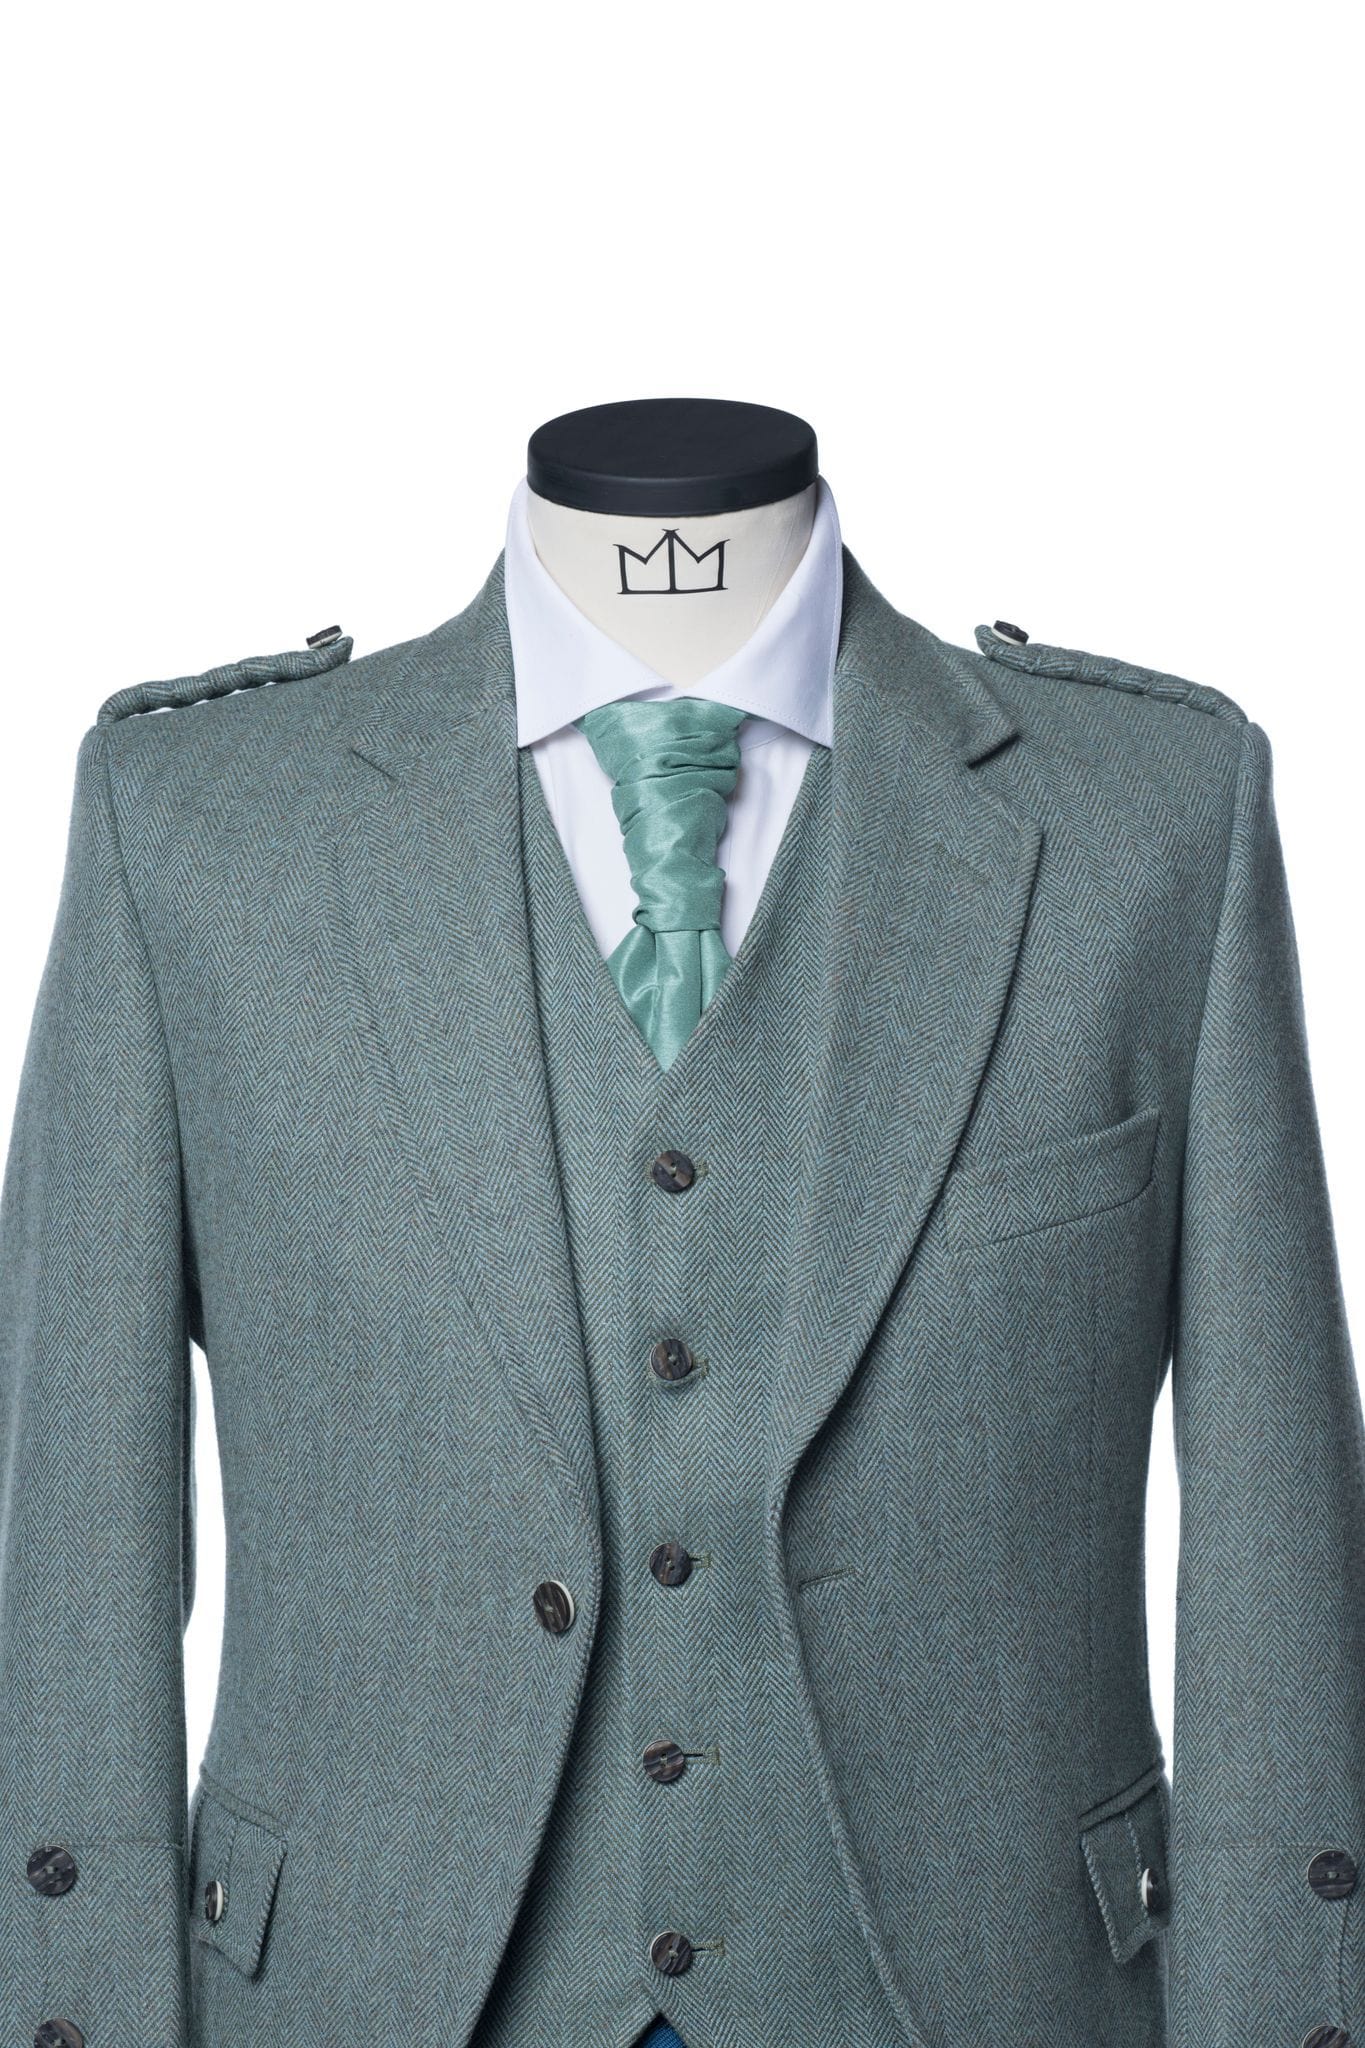 Lovat Green Tweed Kilt Jacket and Waistcoat - MacGregor and MacDuff